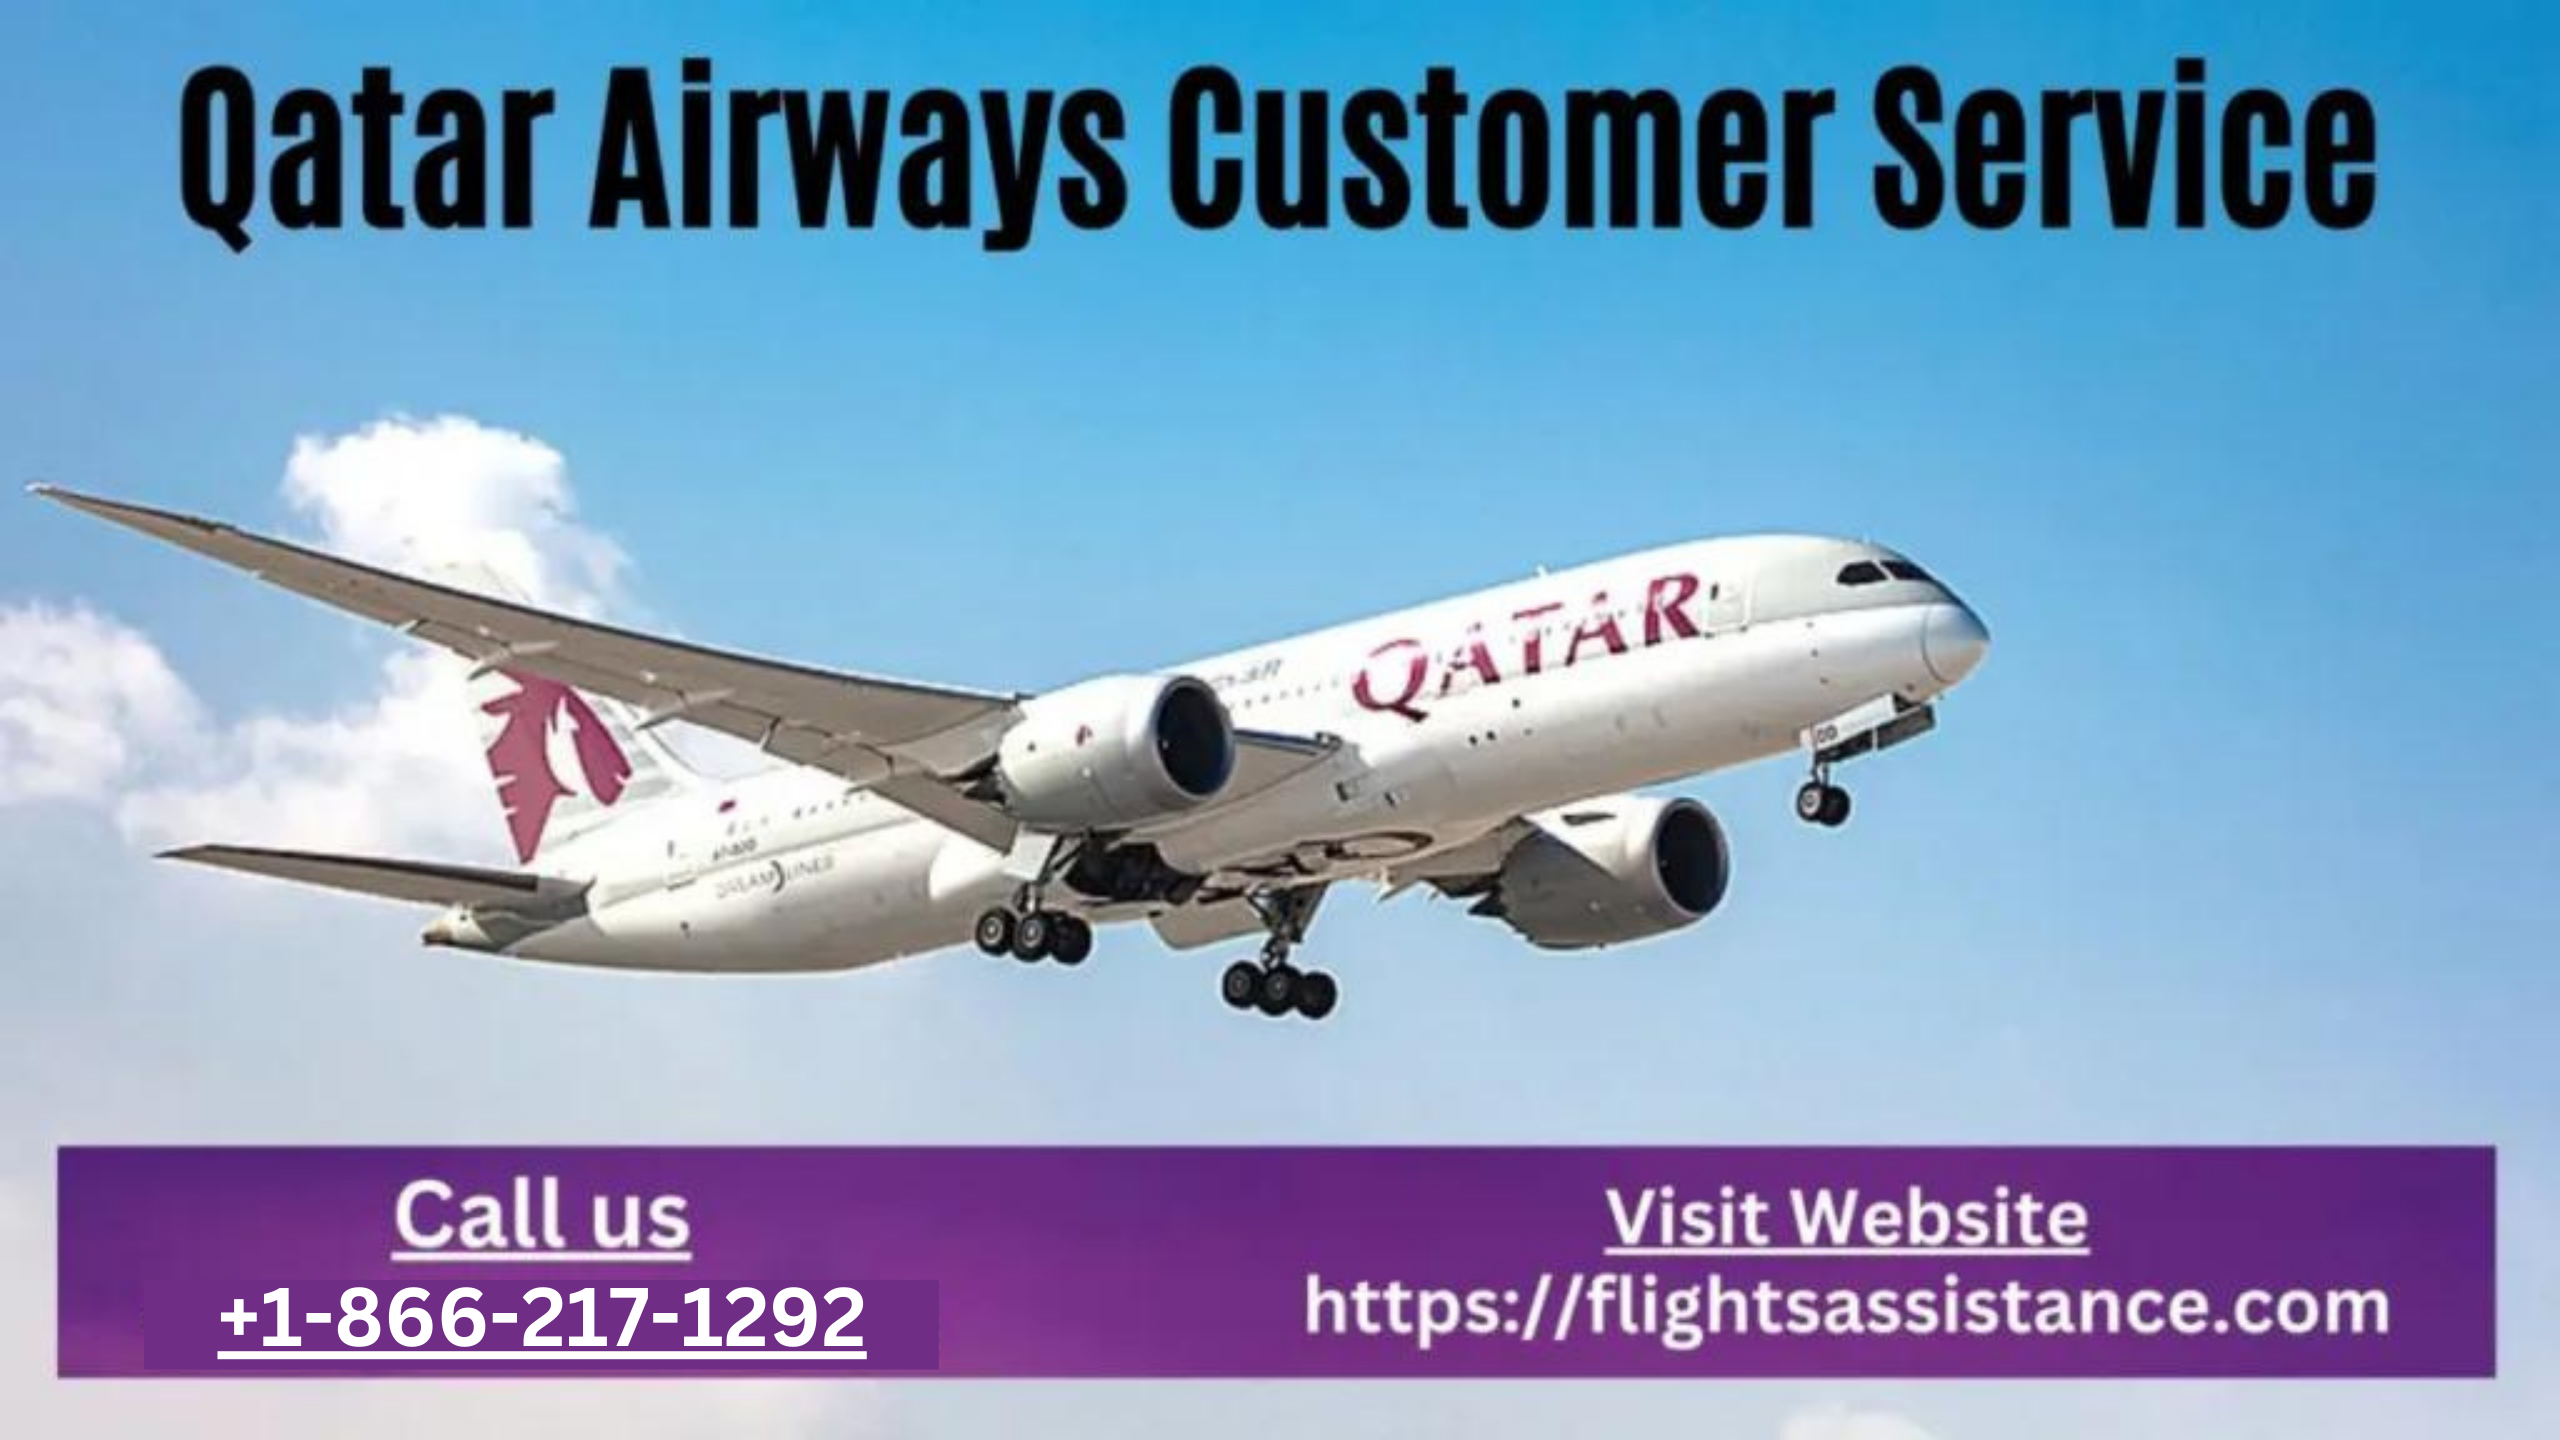 Qatar Airways Customer Service Number +1-866-217-1292